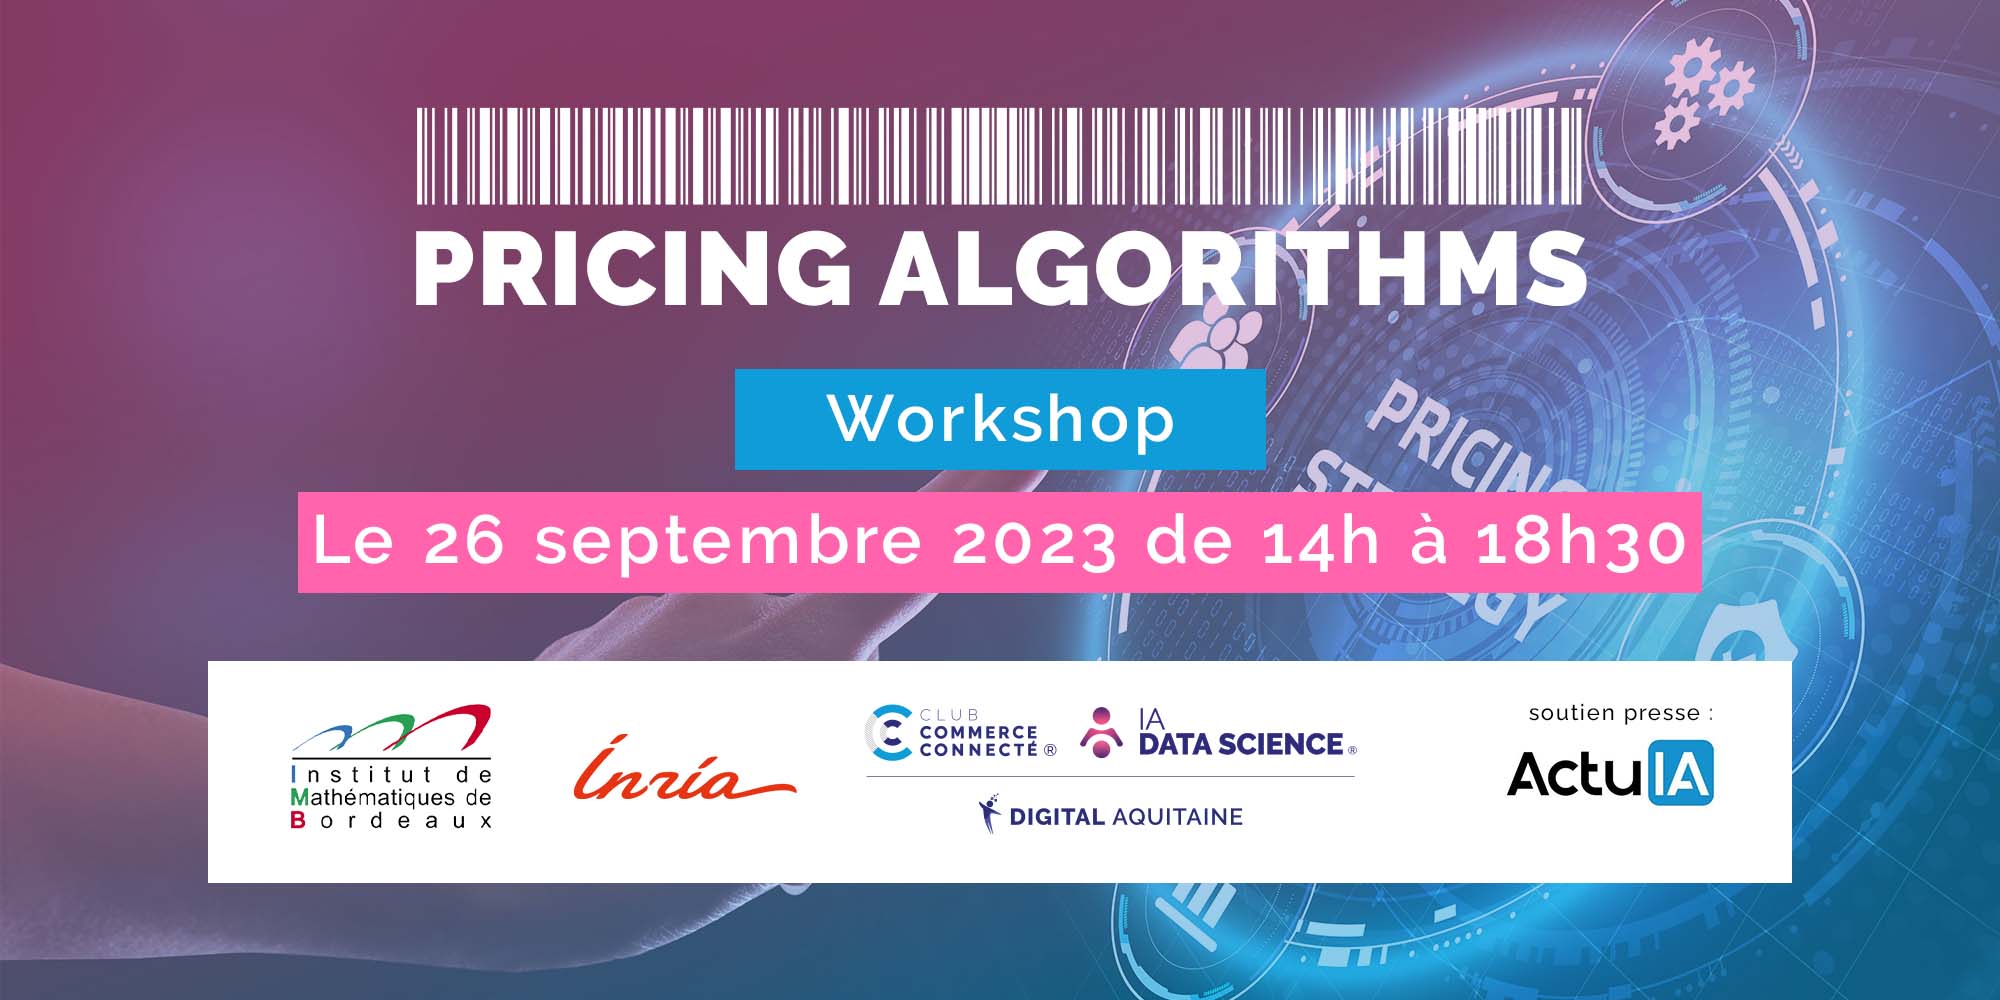 Pour la deuxième année consécutive IADATASCIENCE et Club Commerce Connecté de Digital Aquitaine organisent un workshop "Pricing Algorithms"en partenariat avec l'Inria.